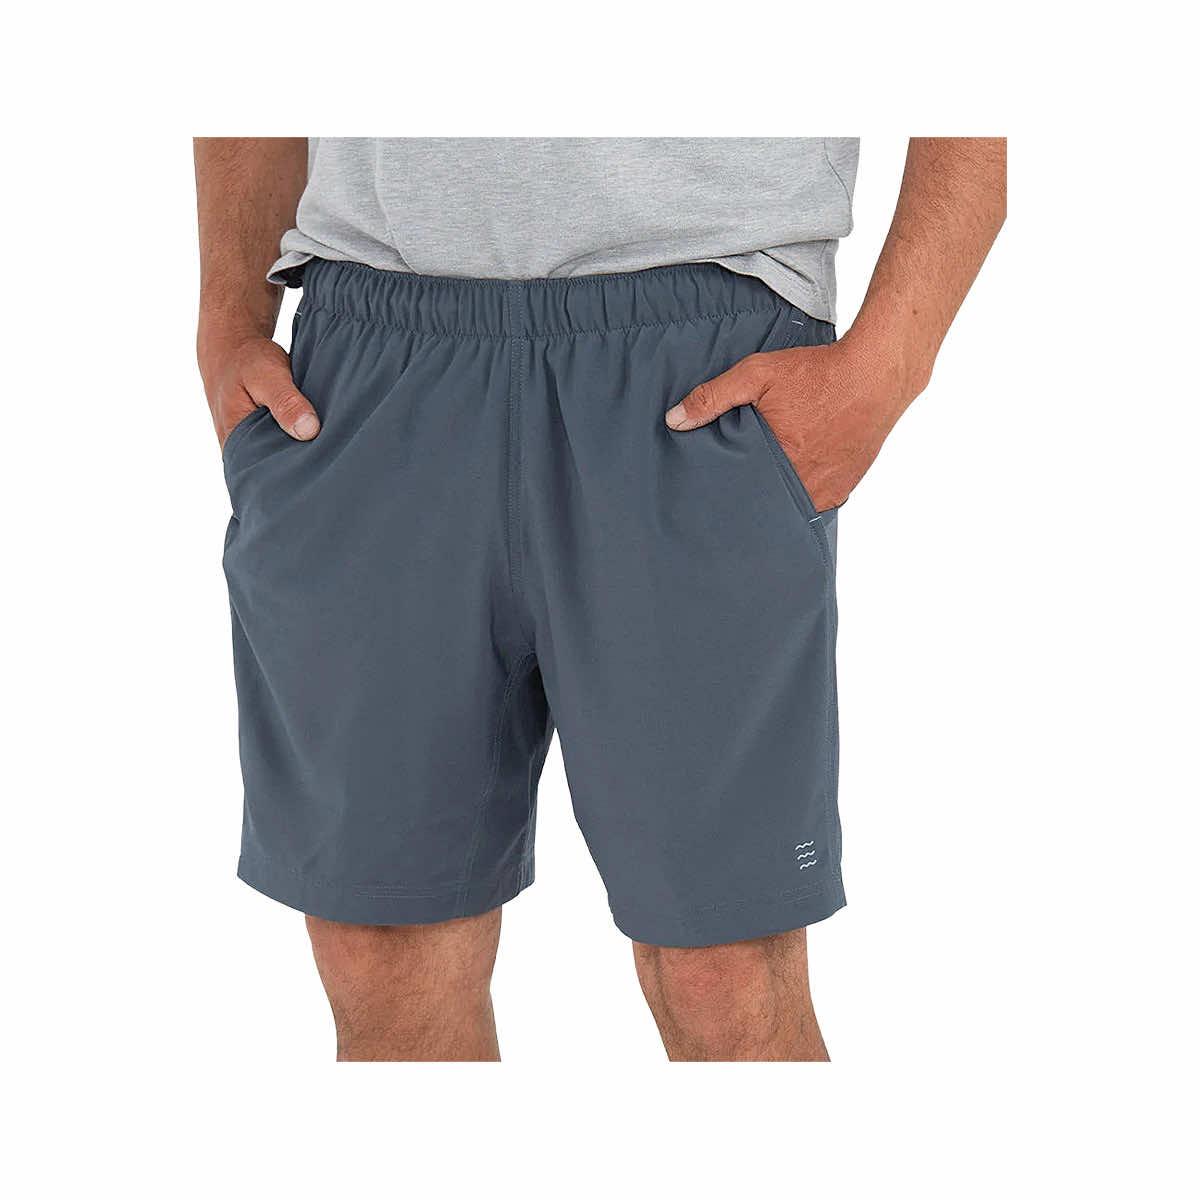  Men's Breeze Shorts - 6 Inches